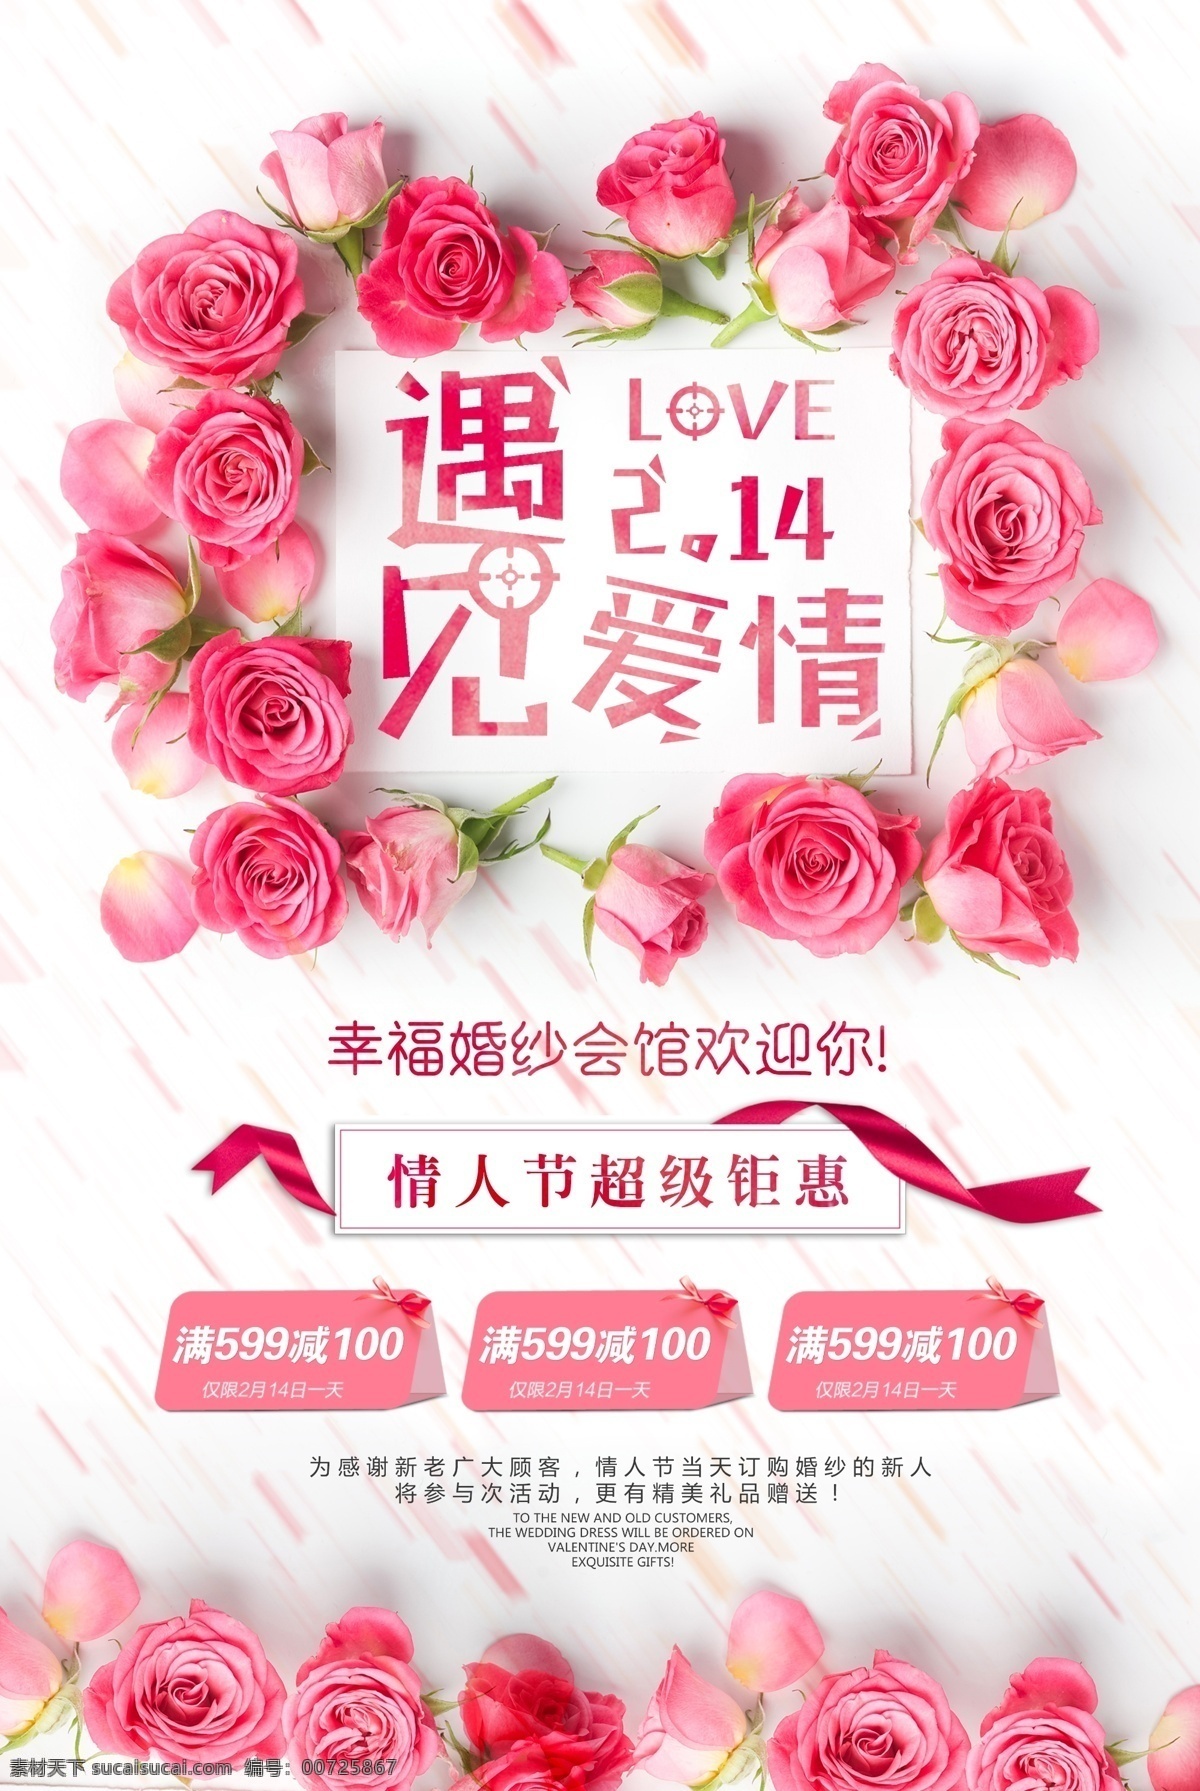 遇见 爱情 浪漫 情人节 214 活动 海报 促销 创意 促销海报模板 宣传 广告